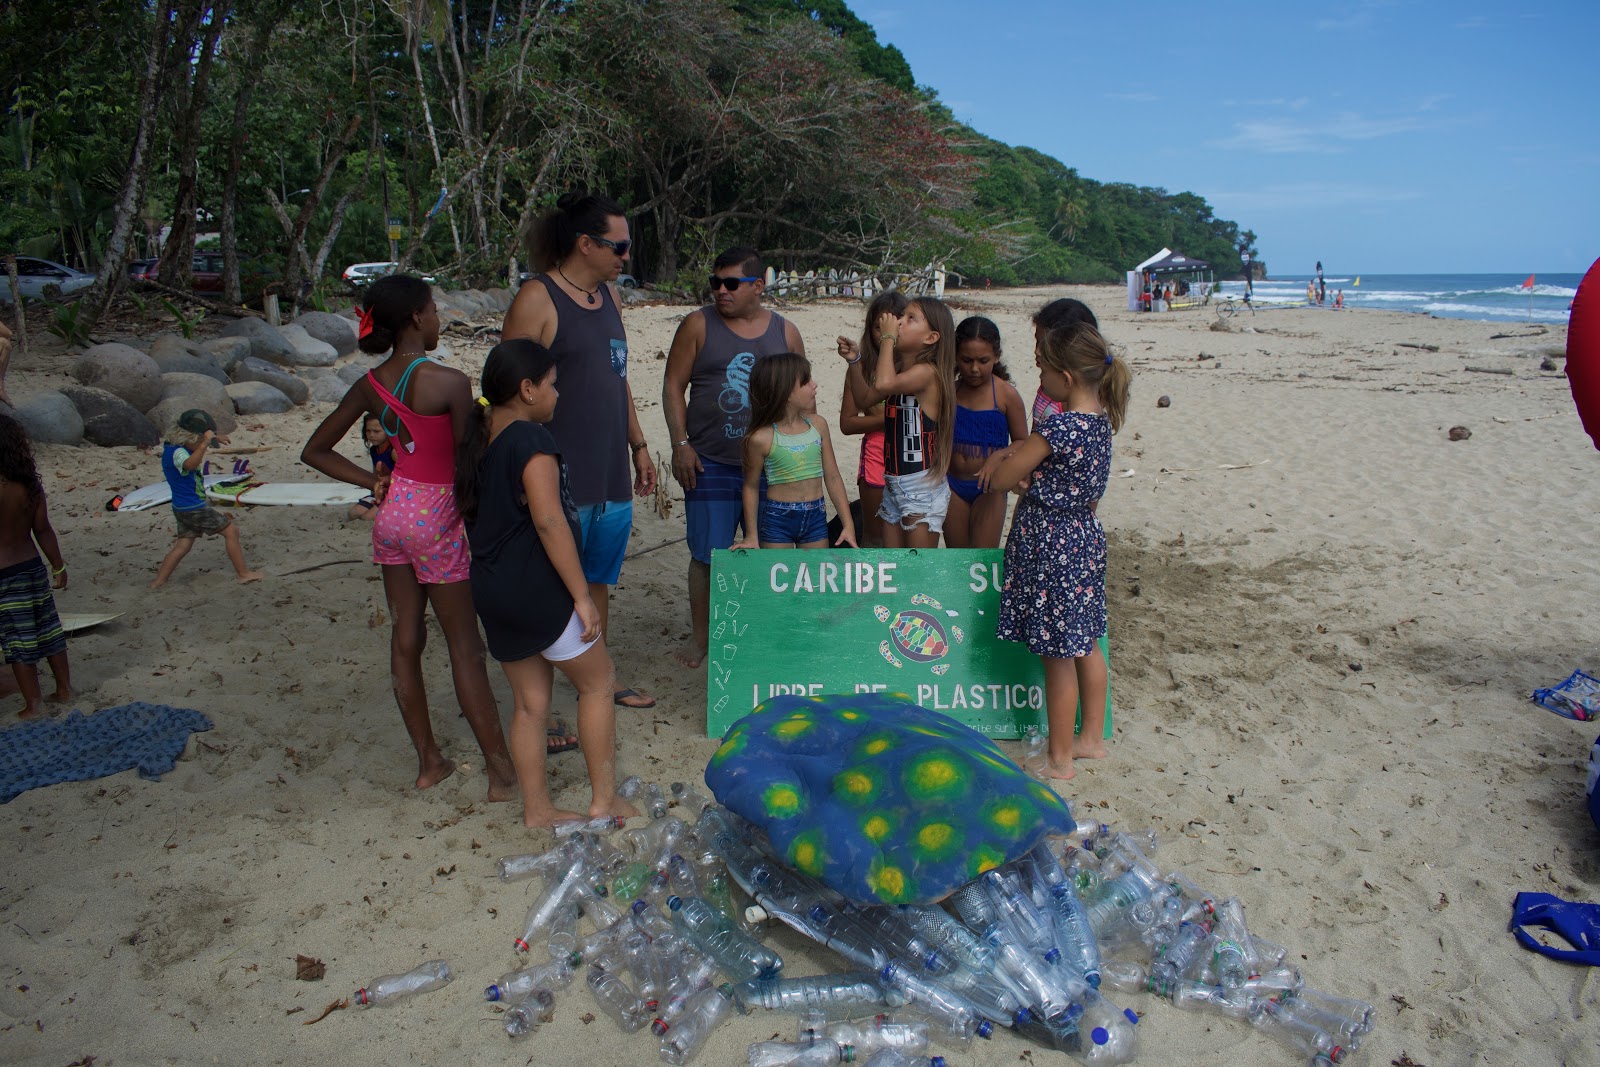 Caribe sur libre plástico